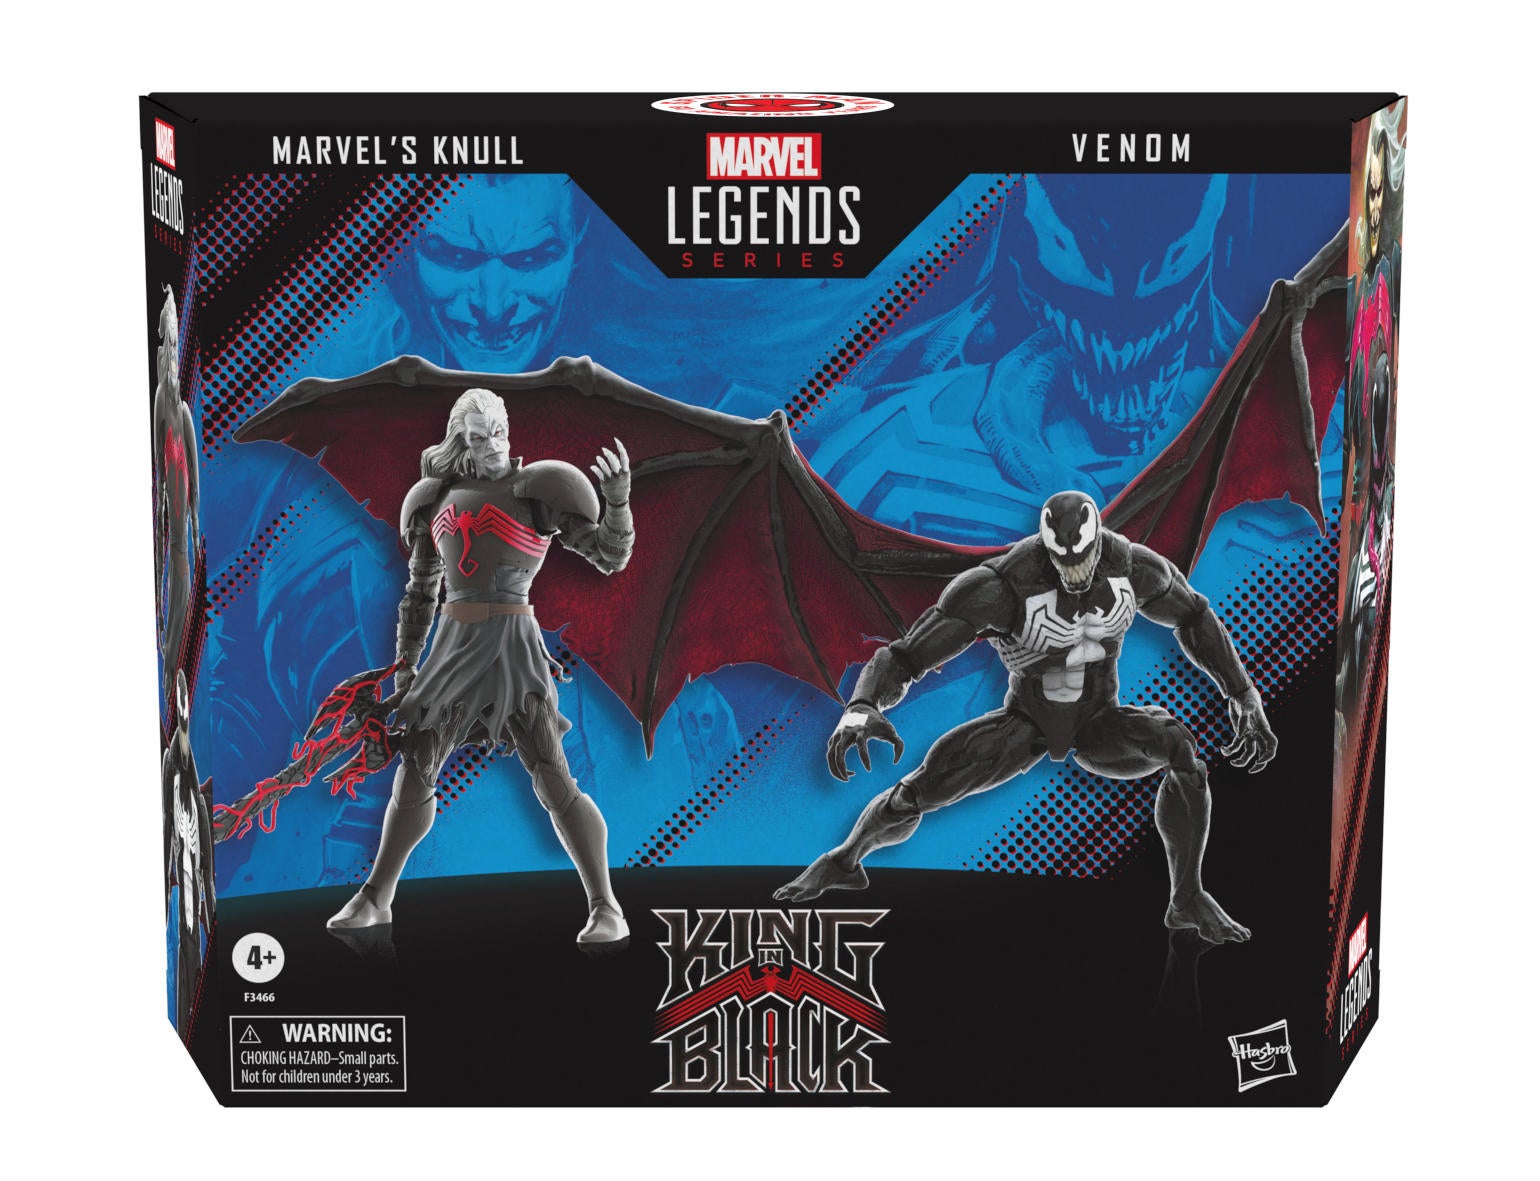 marvel-legends-series-60th-anniv-marvels-knull-and-venom-2-pack-image-2.jpg